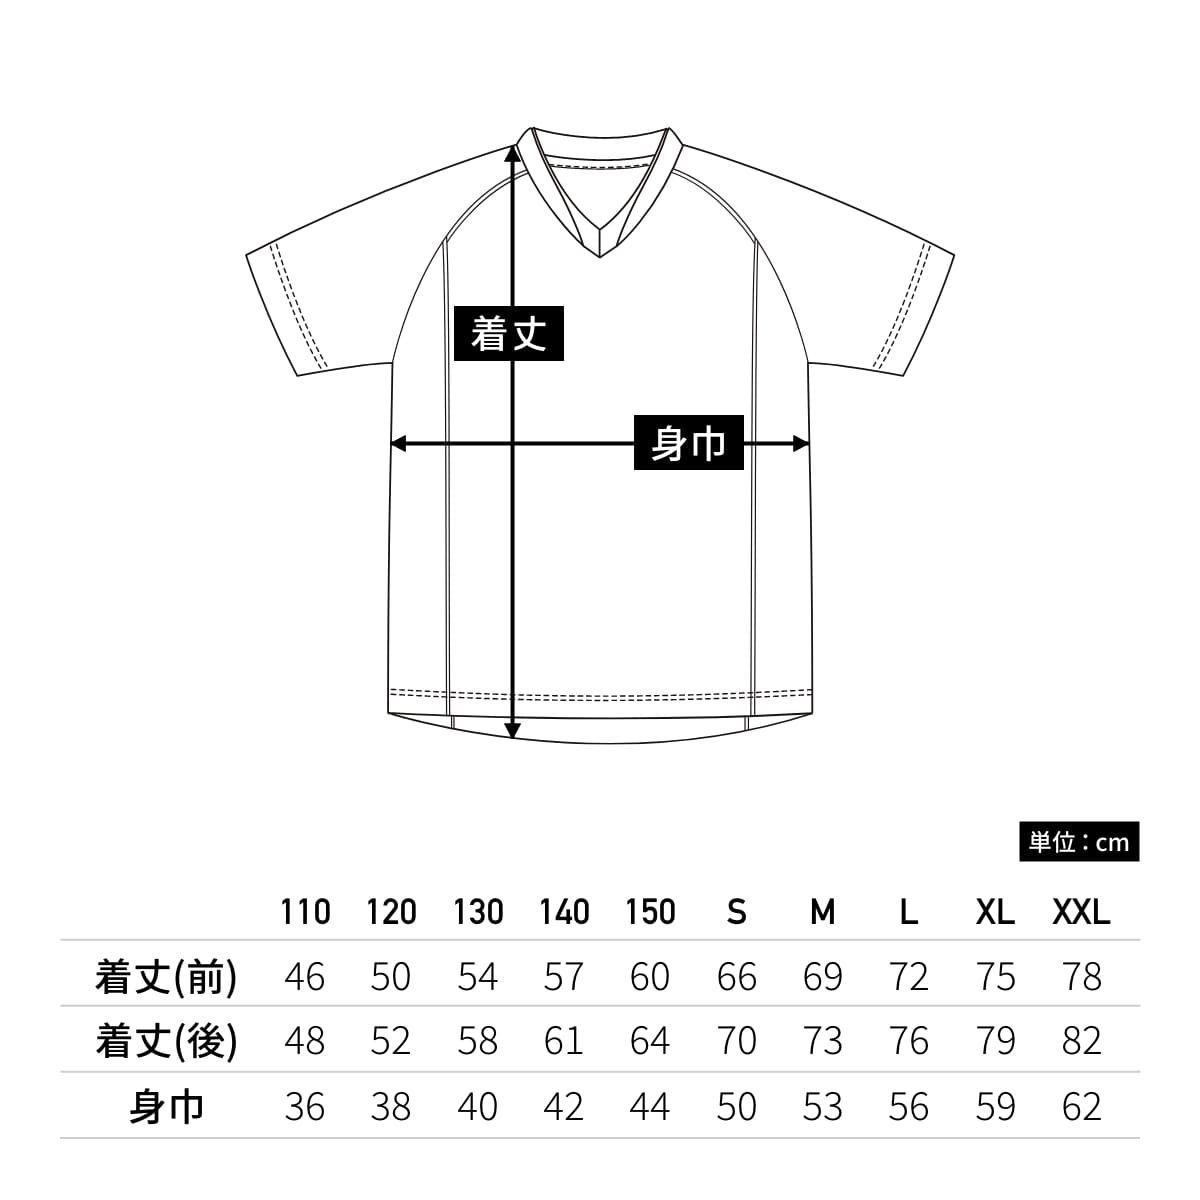 【送料無料】ベーシックサッカーシャツ | ユニフォーム | 1枚 | P1910 | プラム